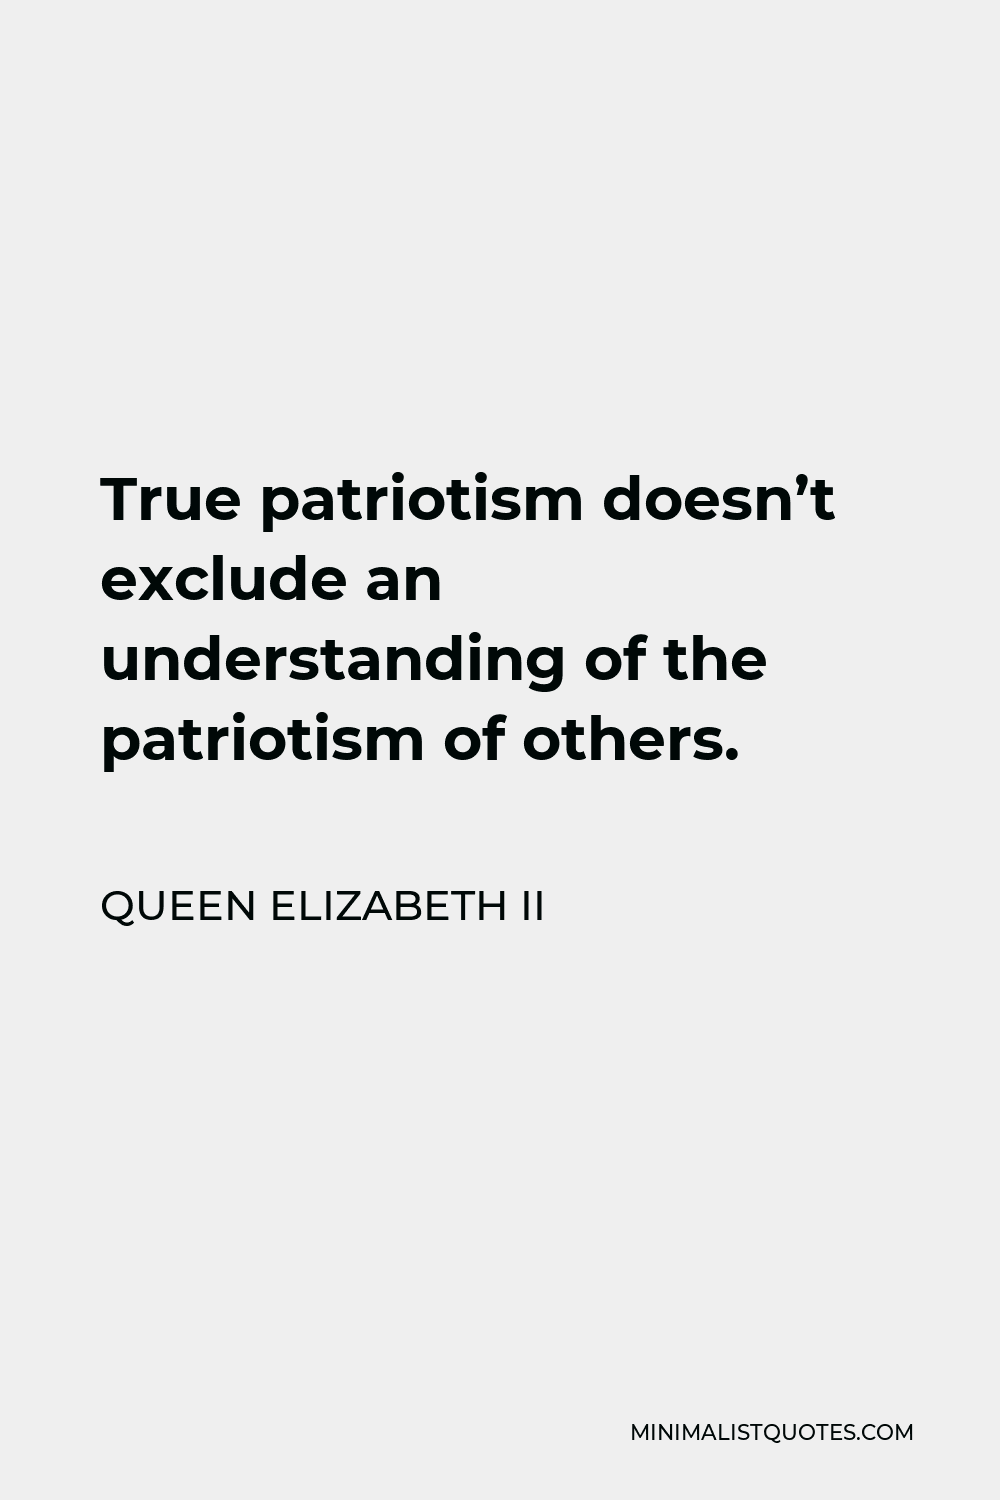 Queen Elizabeth II Quote: True patriotism doesn't exclude an ...